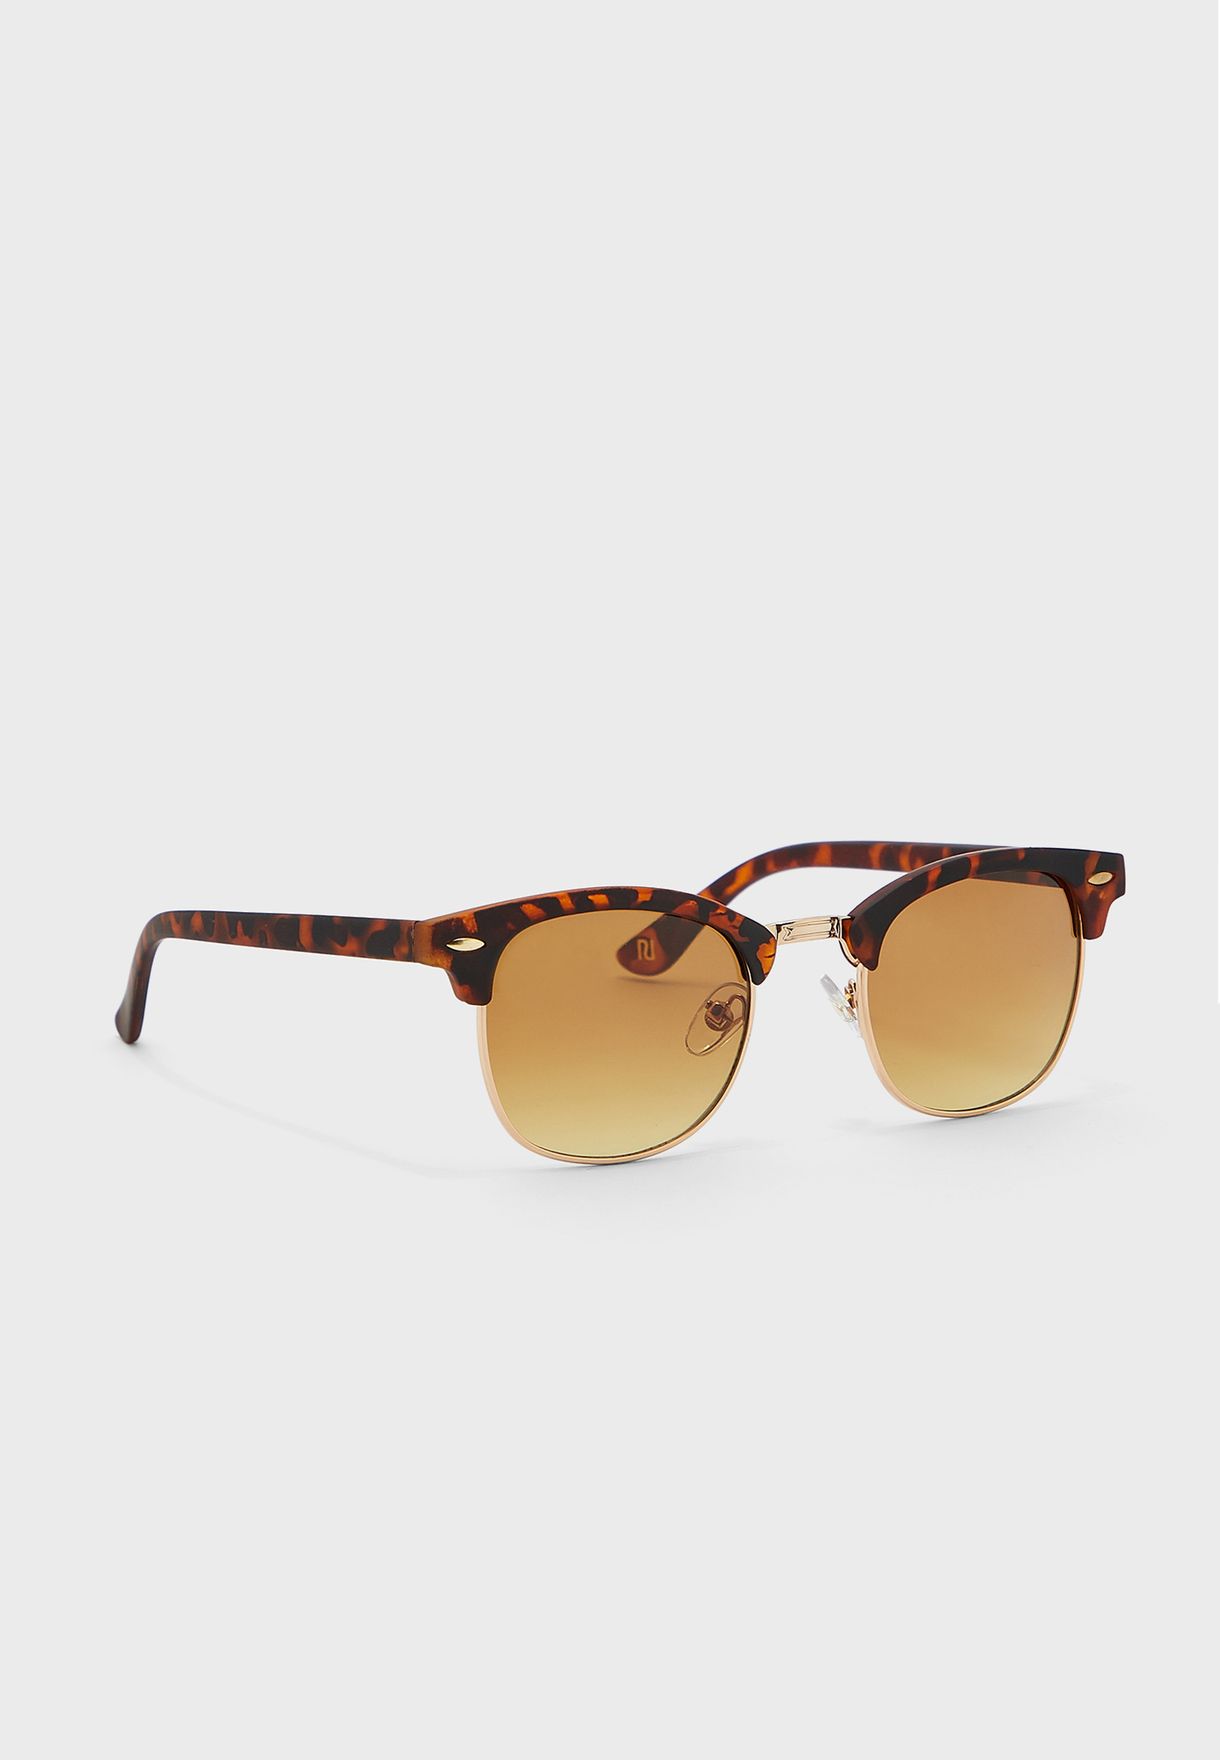 men's clubmaster sunglasses cheap